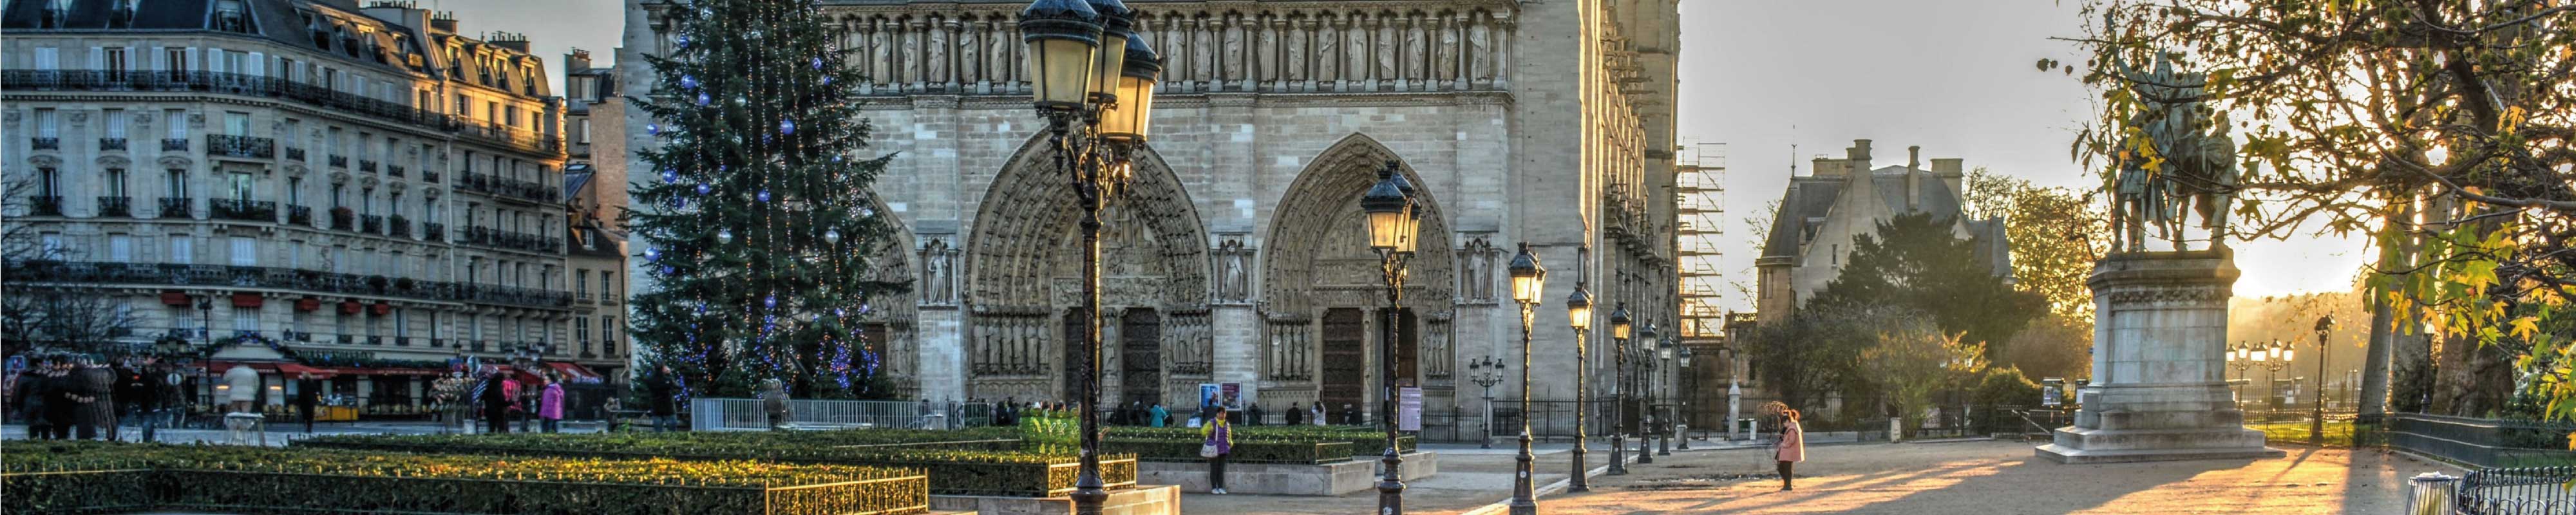 Gepäckaufbewahrung | Notre Dame in Paris - Nannybag